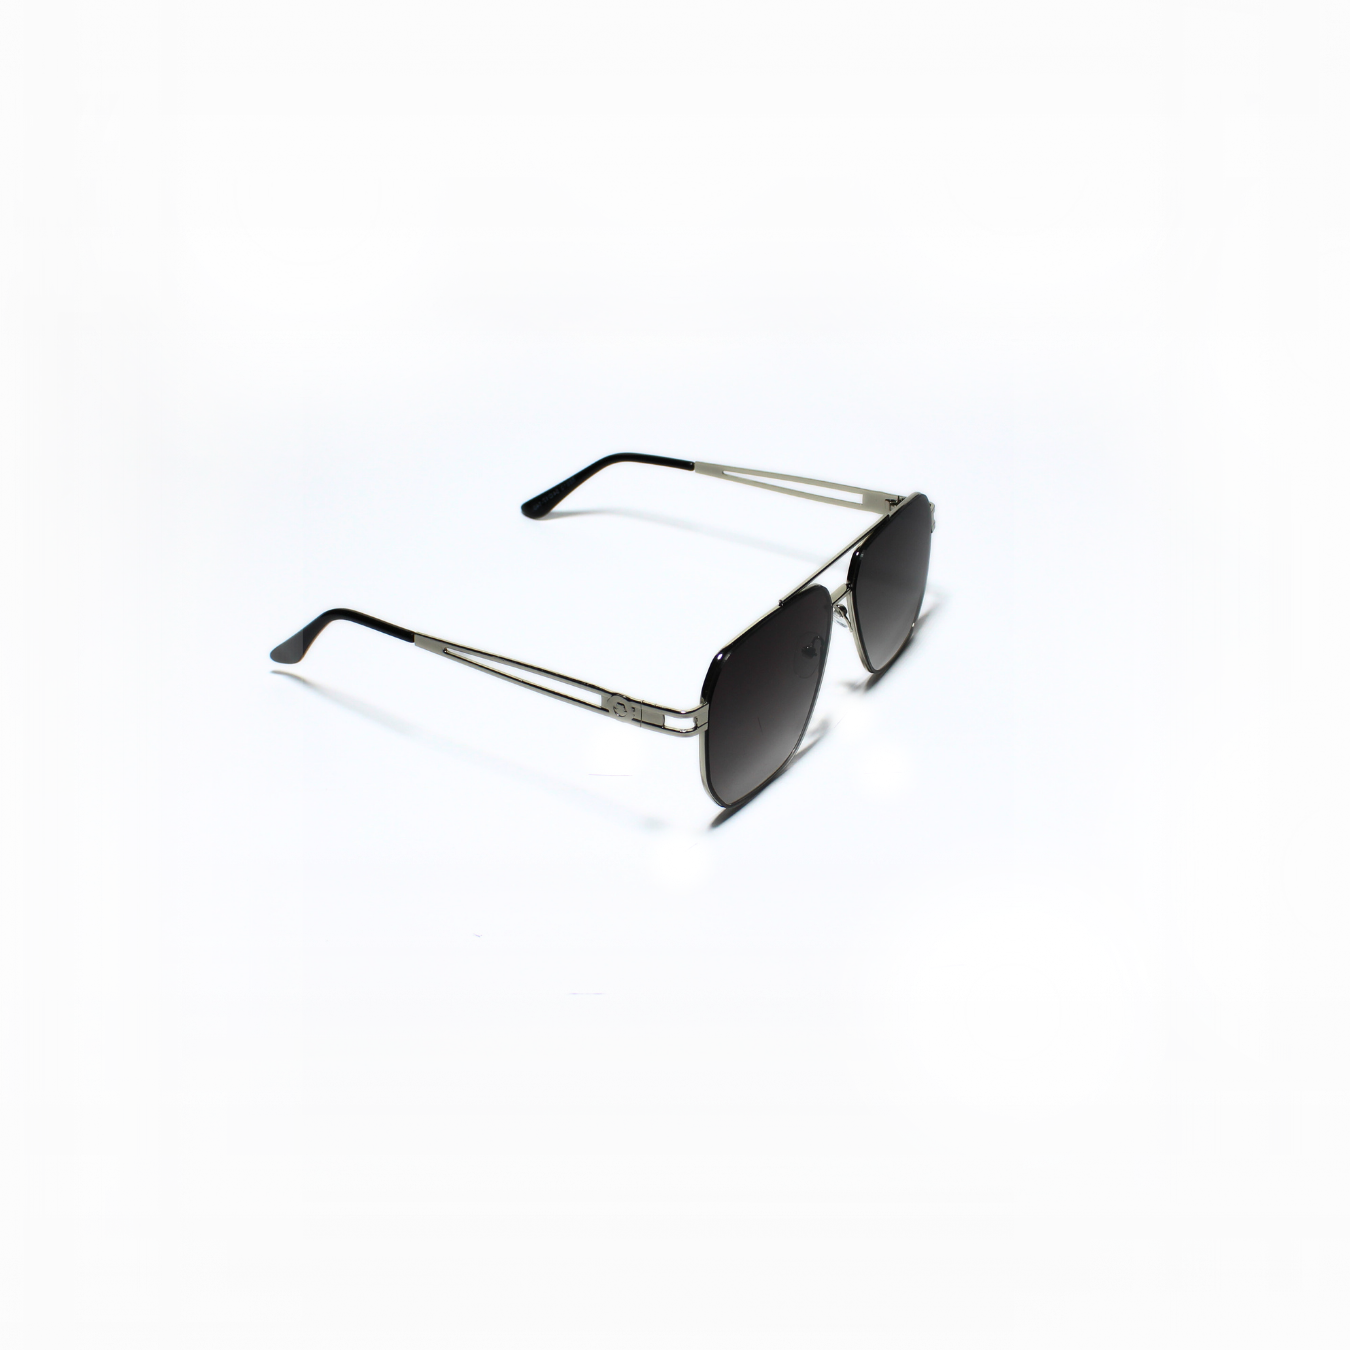 ARTHUR-I//001 I Sunglasses for Women - Specsview